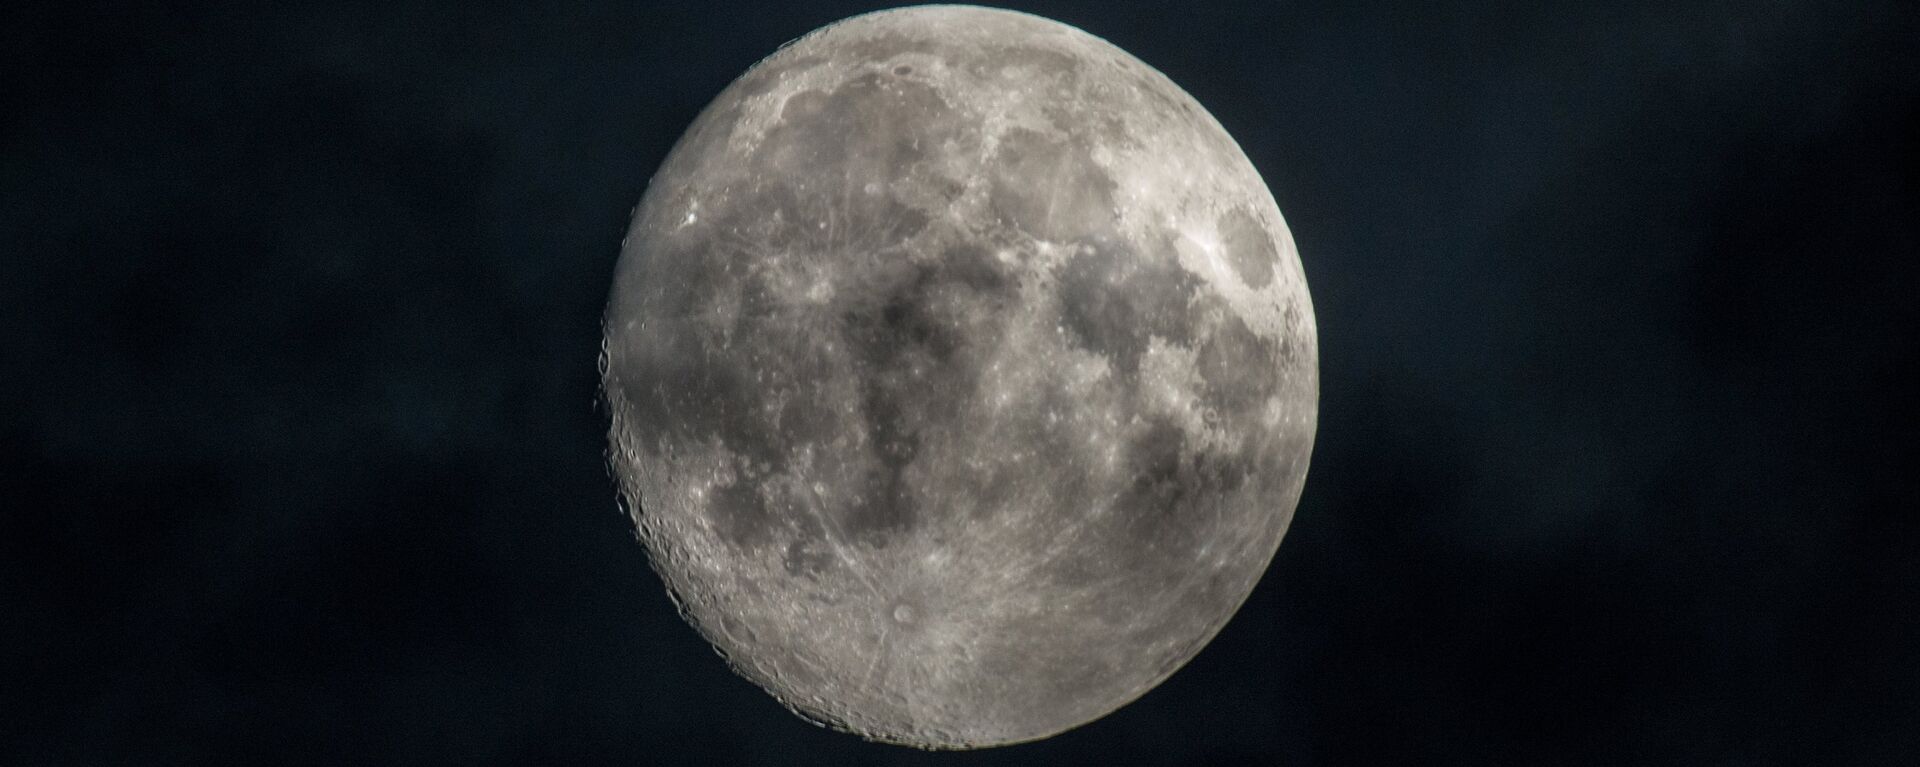 Mėnulis - Sputnik Lietuva, 1920, 03.02.2021